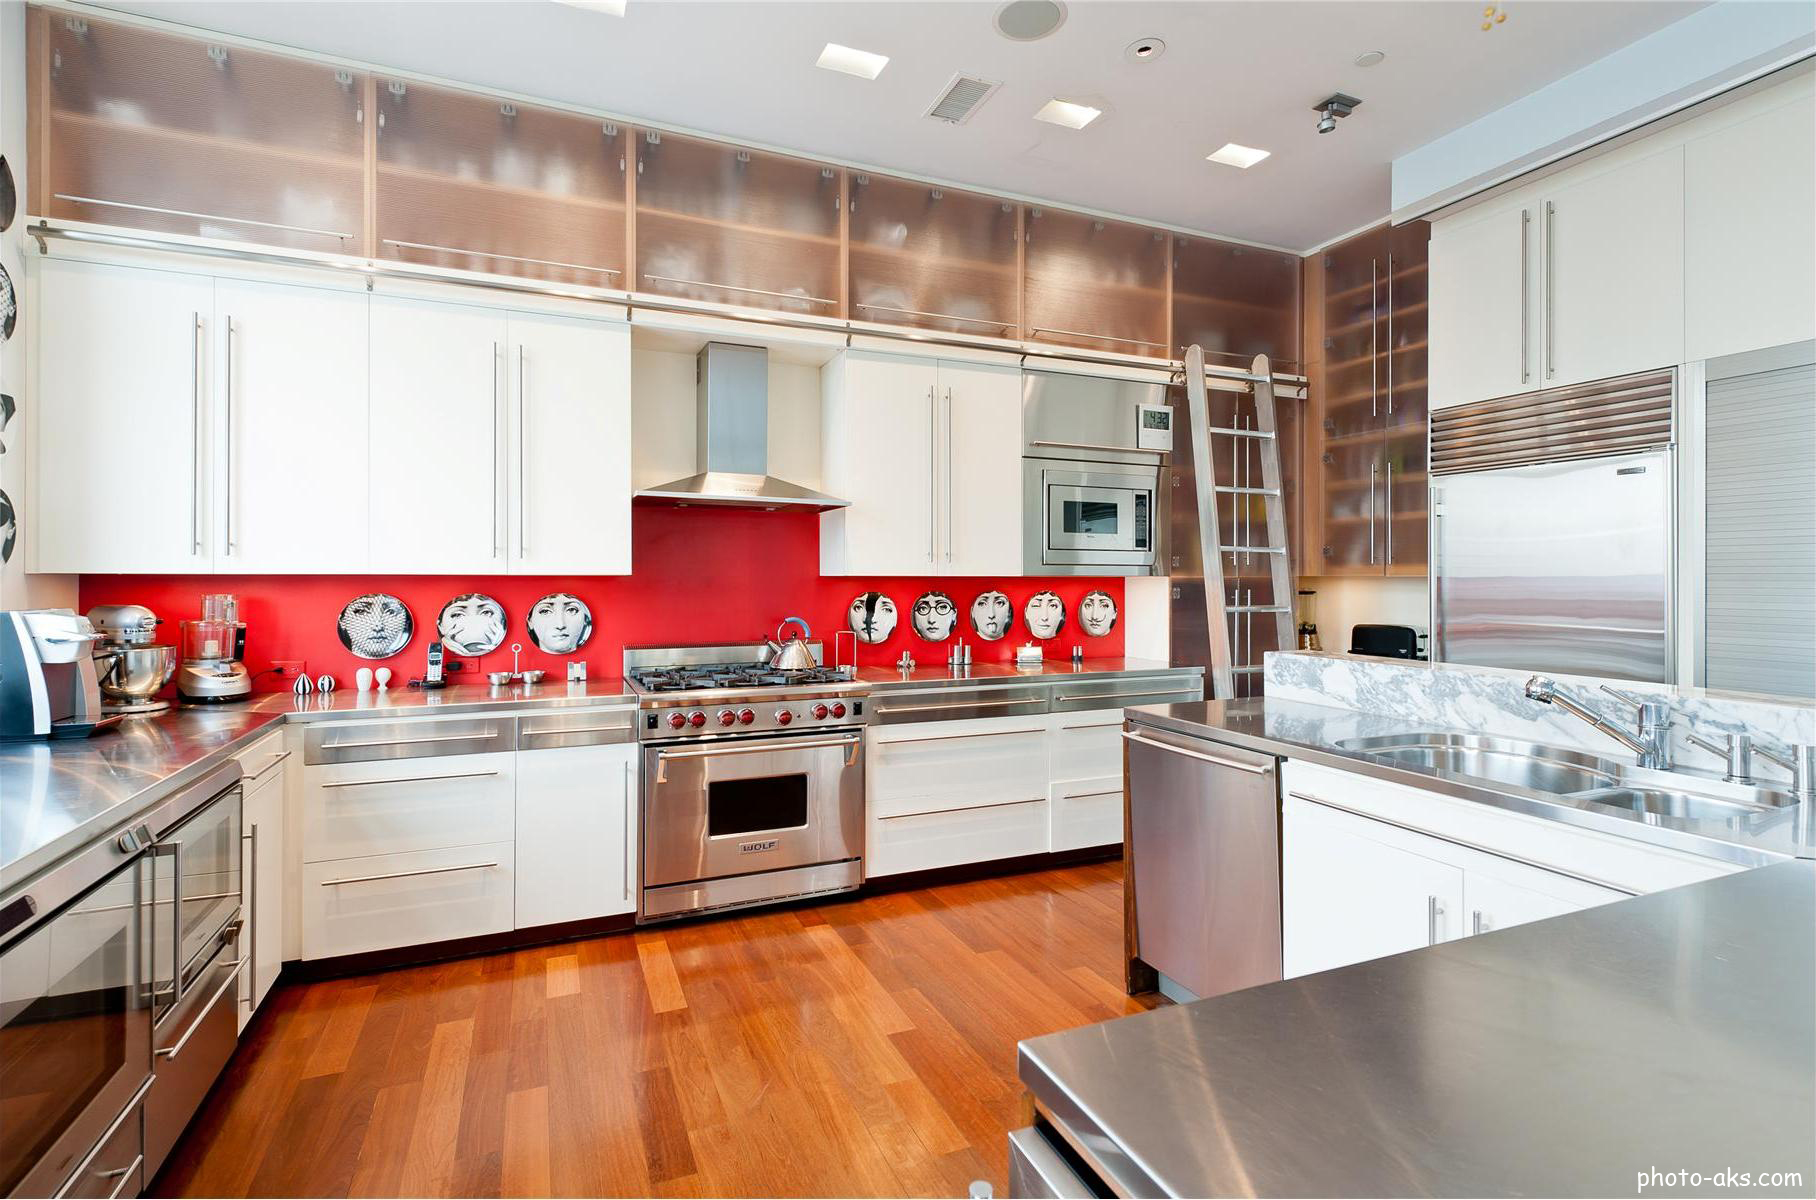 Фартук до потолка. Красивые кухни. Белая кухня с красным фартуком. Кухня под потолок. Фартук до потолка на кухне.